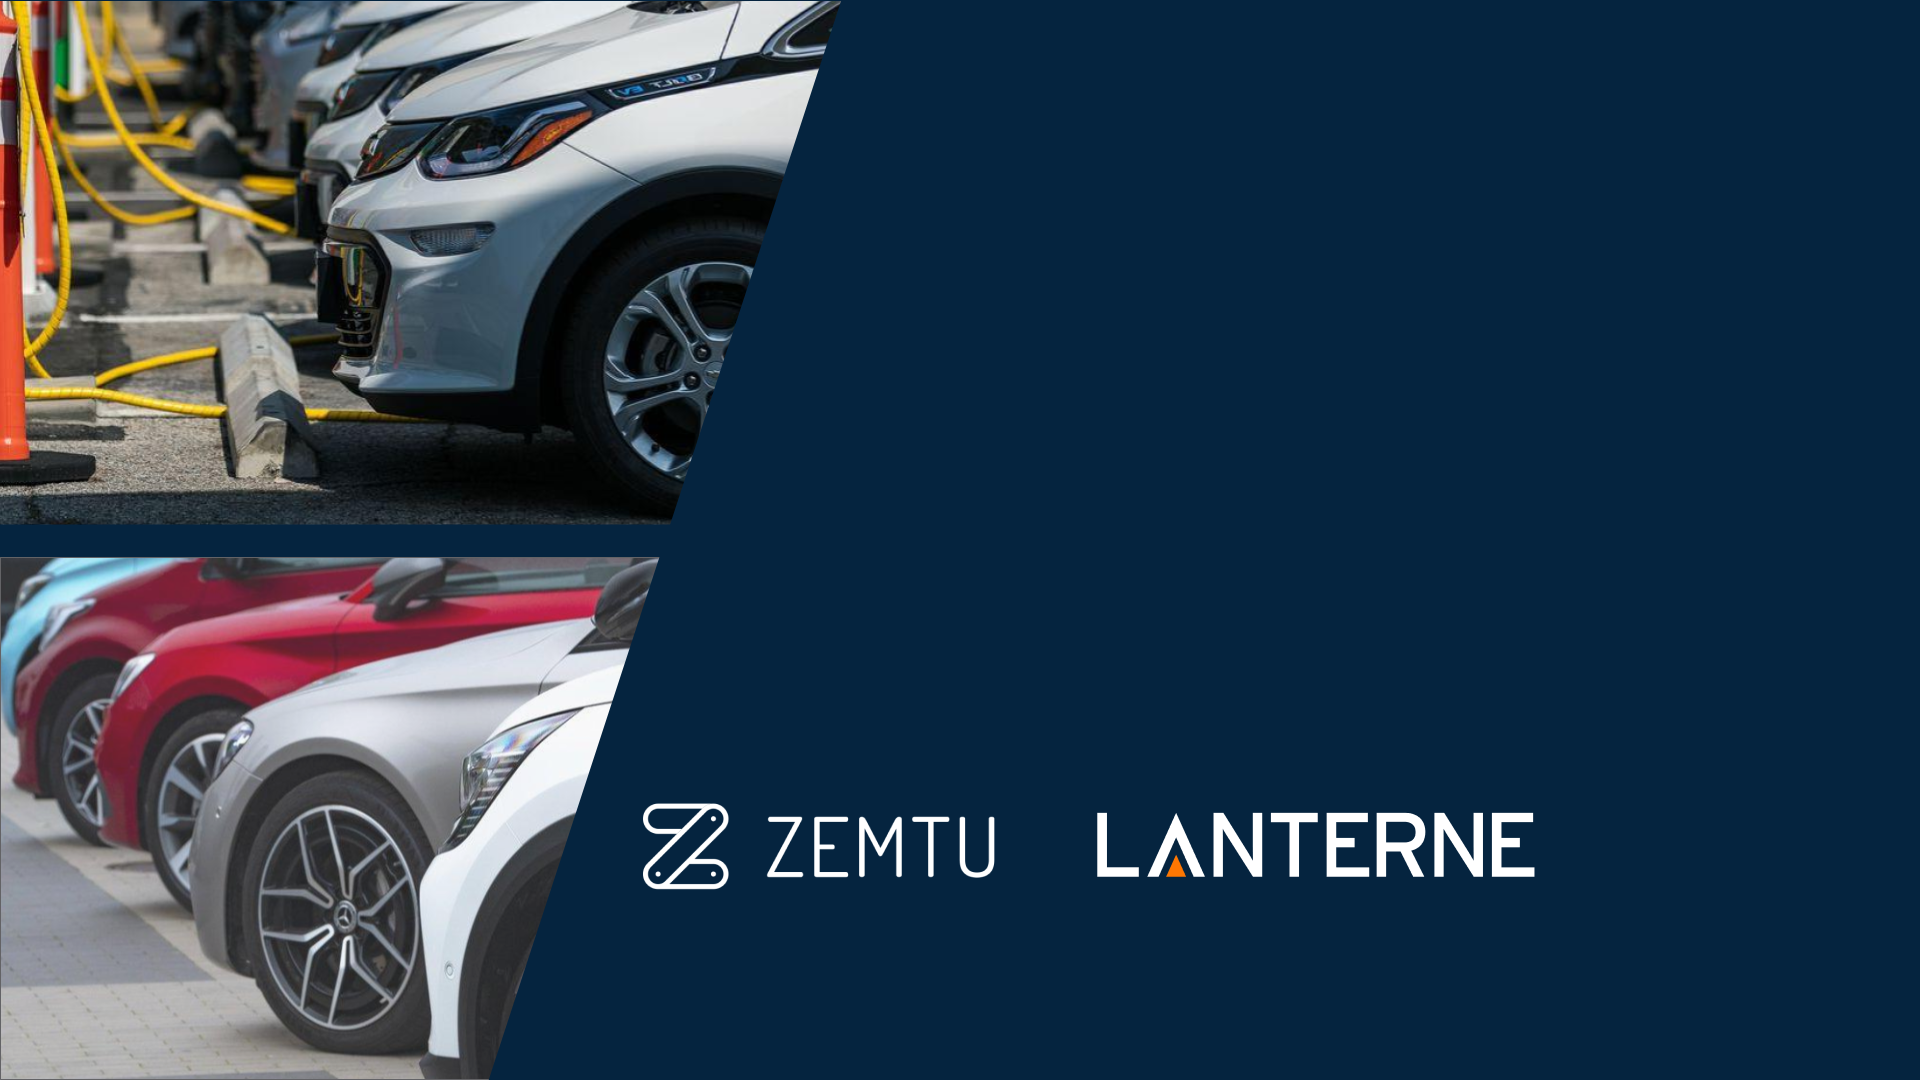 Lanterne and Zemtu partnership